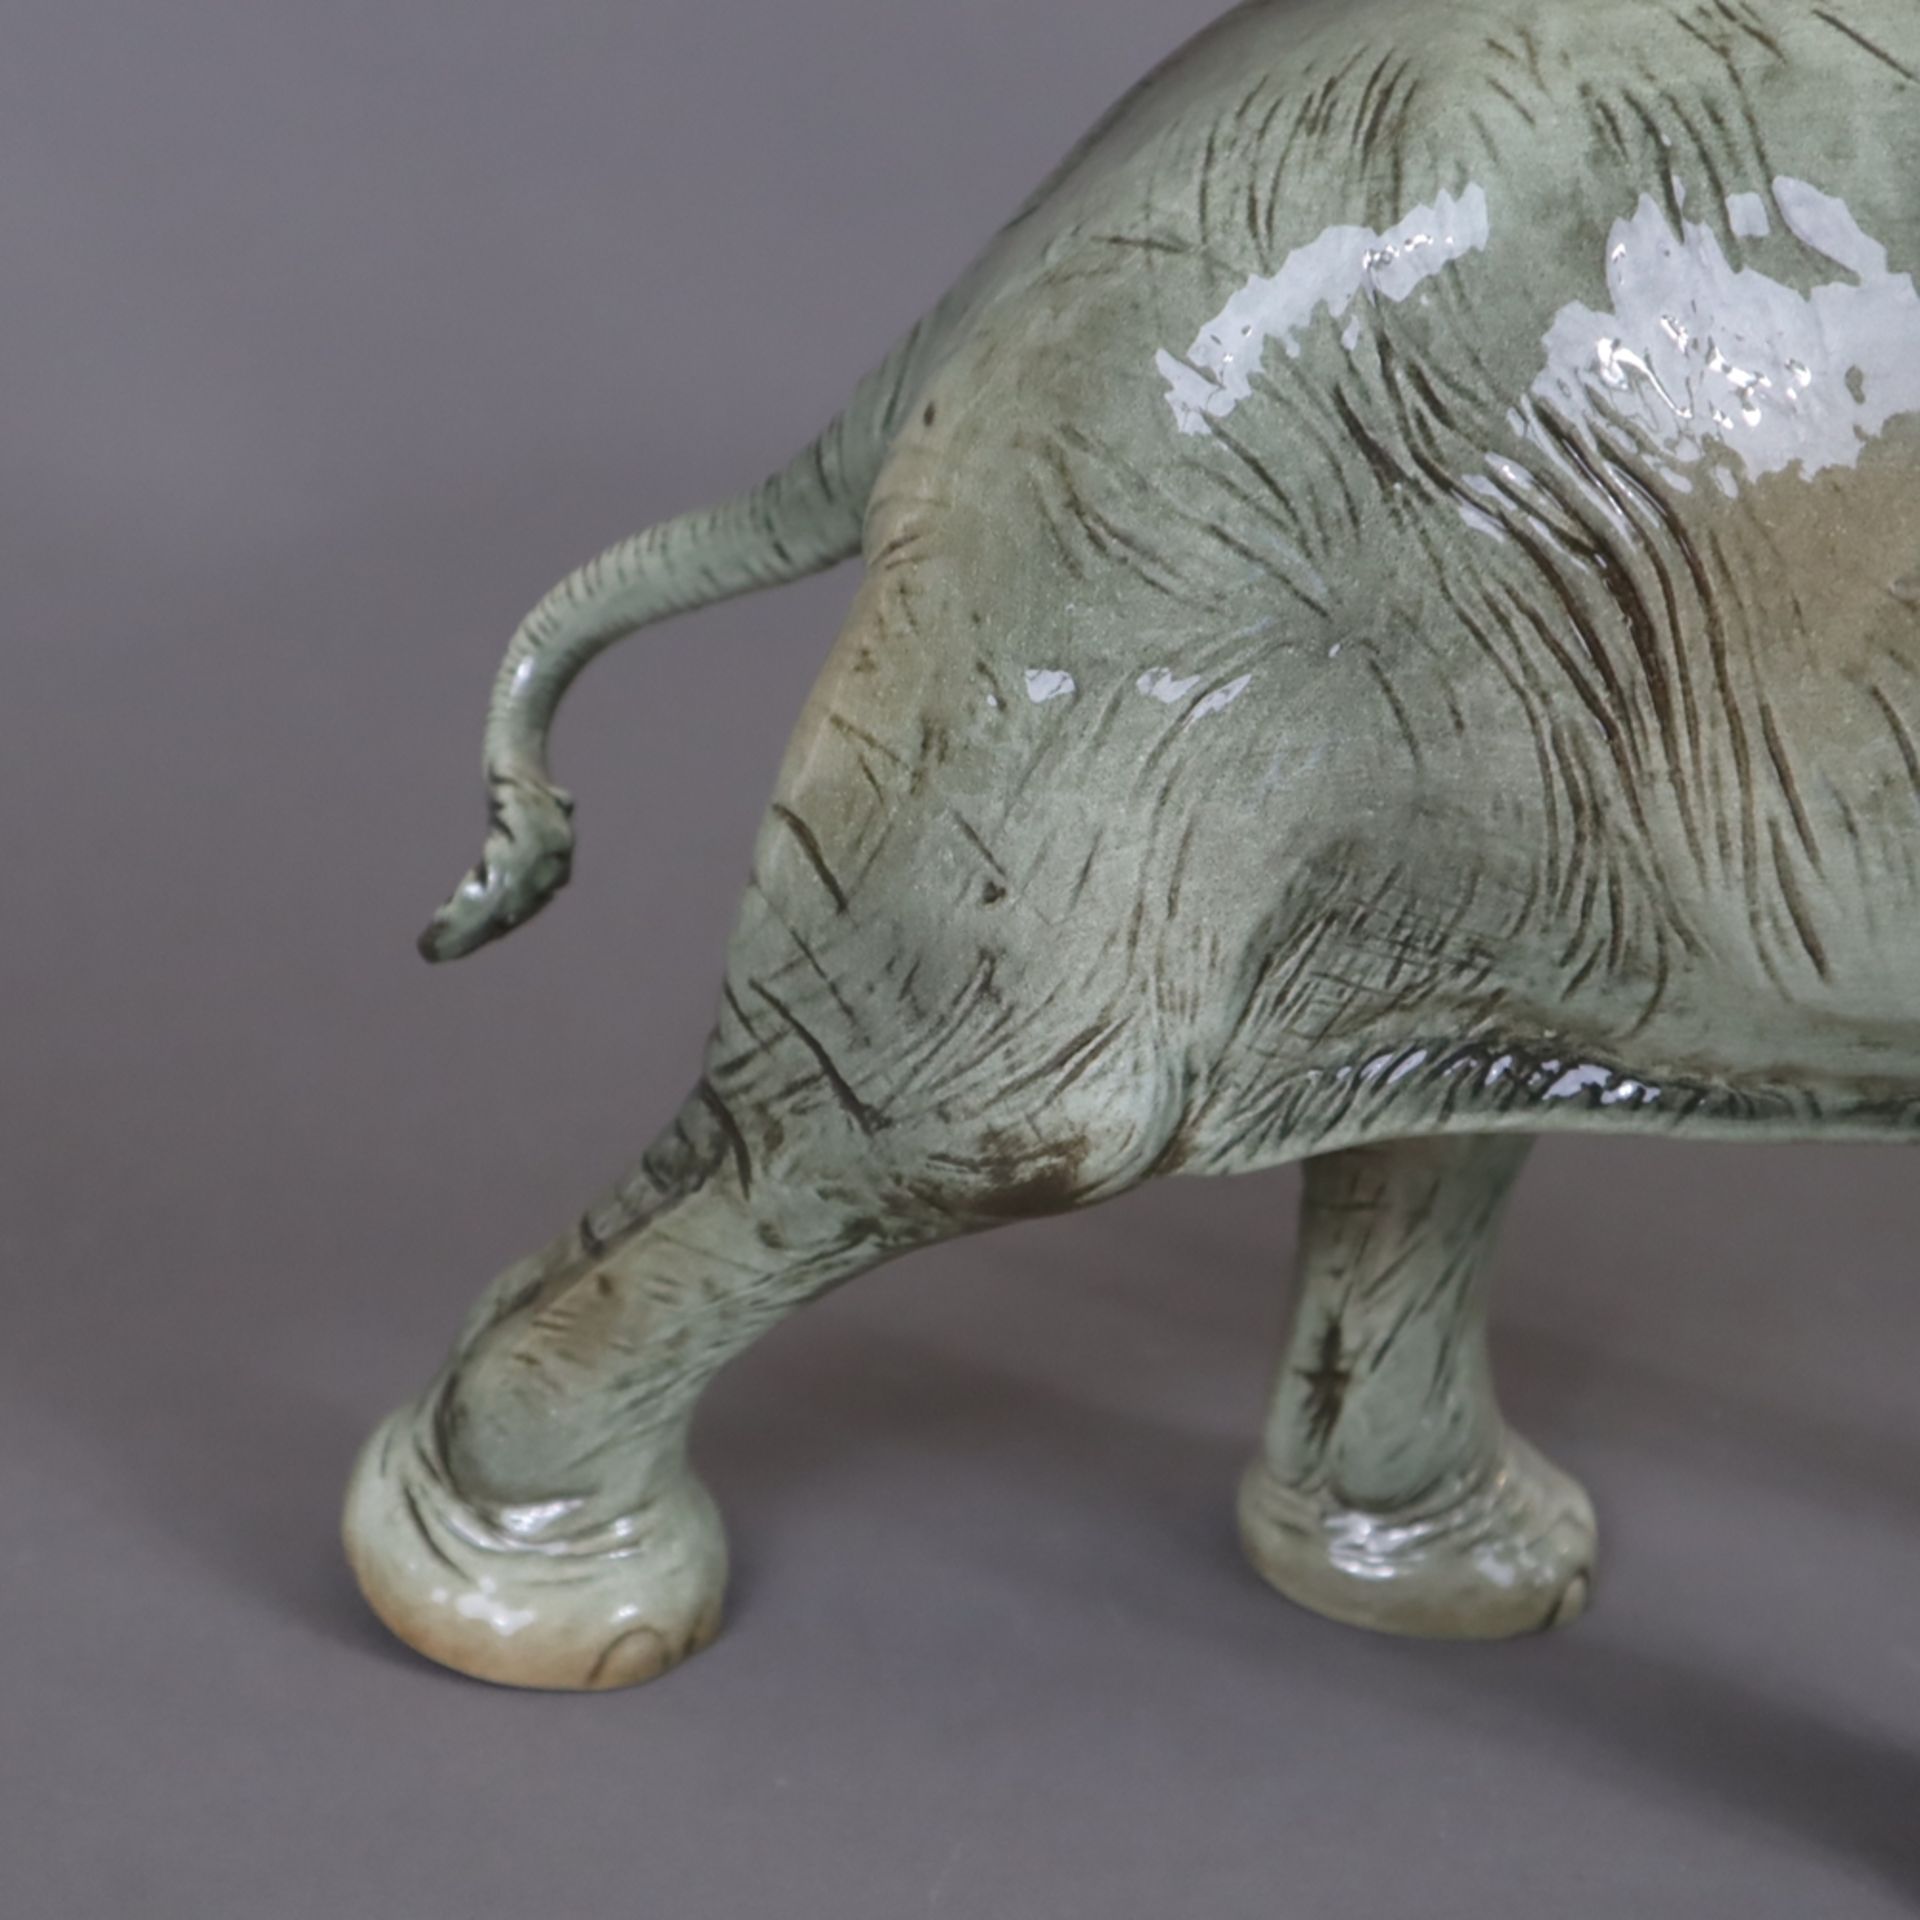 Große Tierfigur "Afrikanischer Elefant" - Goebel, aus der Figurenserie "Serengeti", Porzellan, natu - Bild 3 aus 8